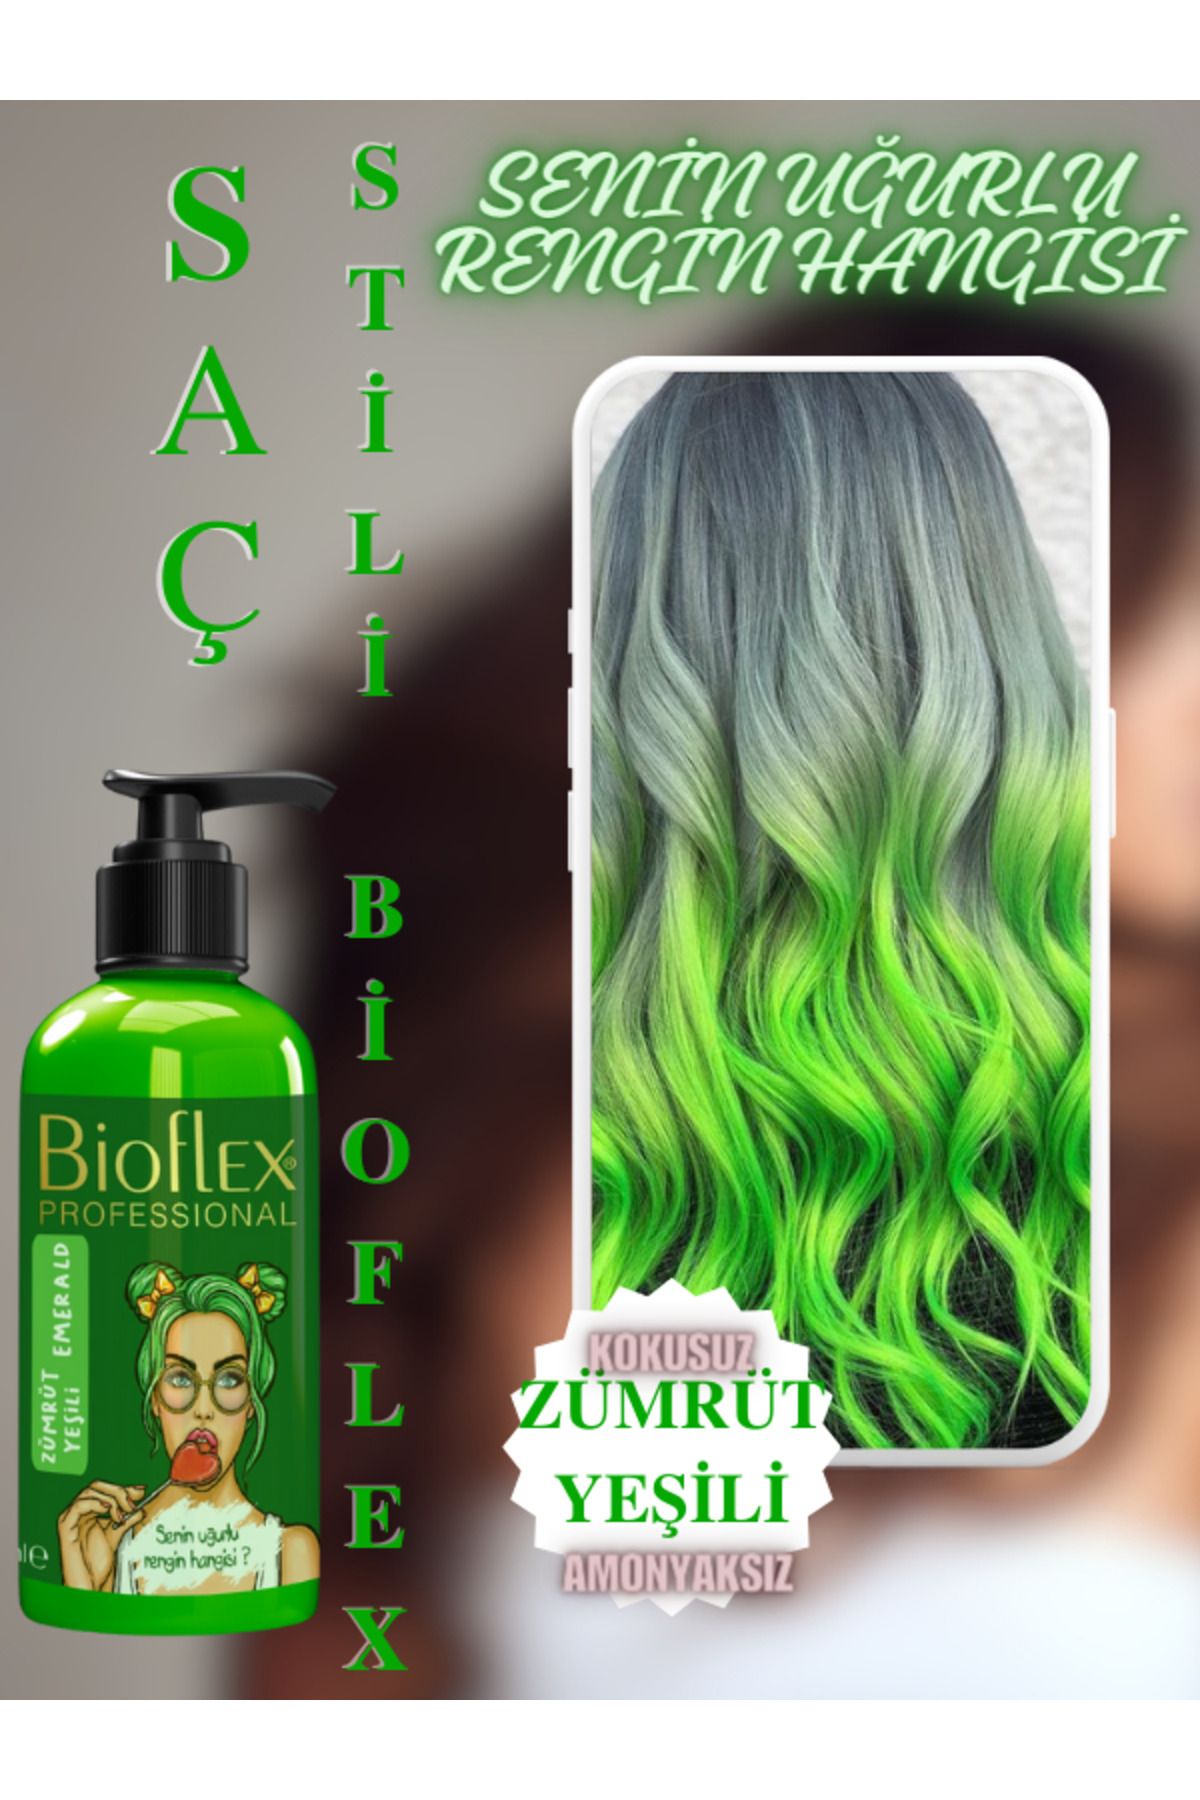 Bioflex Natural Hair Color Amonyaksız Zümrüt Yeşili Saç Boyası